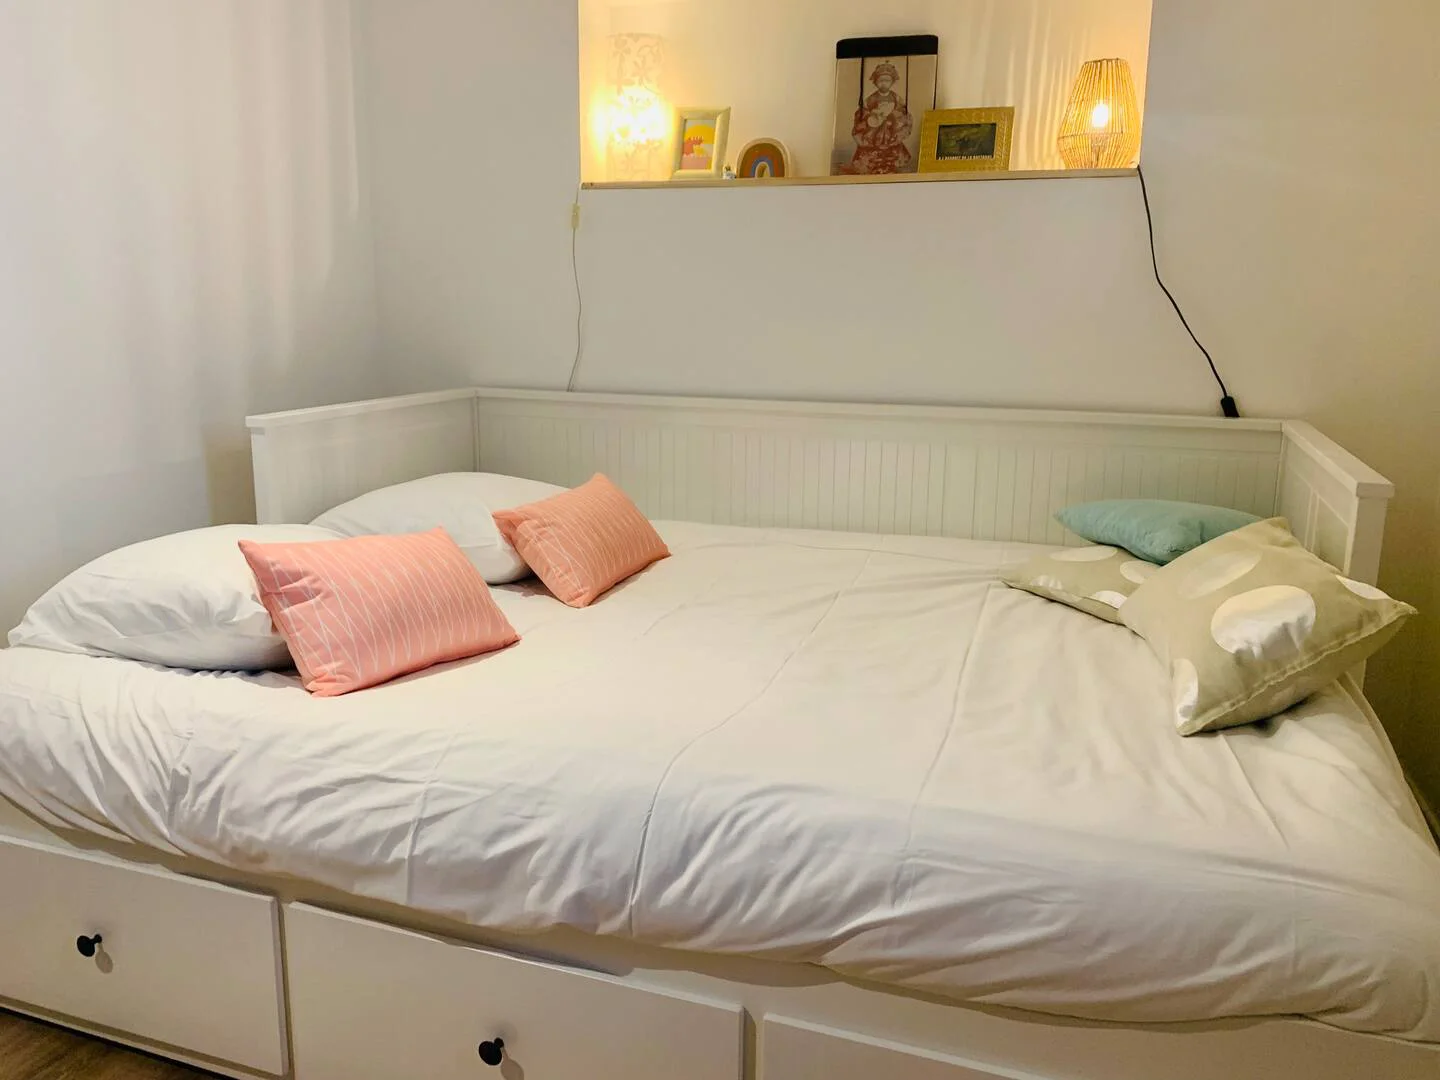 rennes-host-airbnb-conciergerie-el-pepita-maison-coin-jardin-6